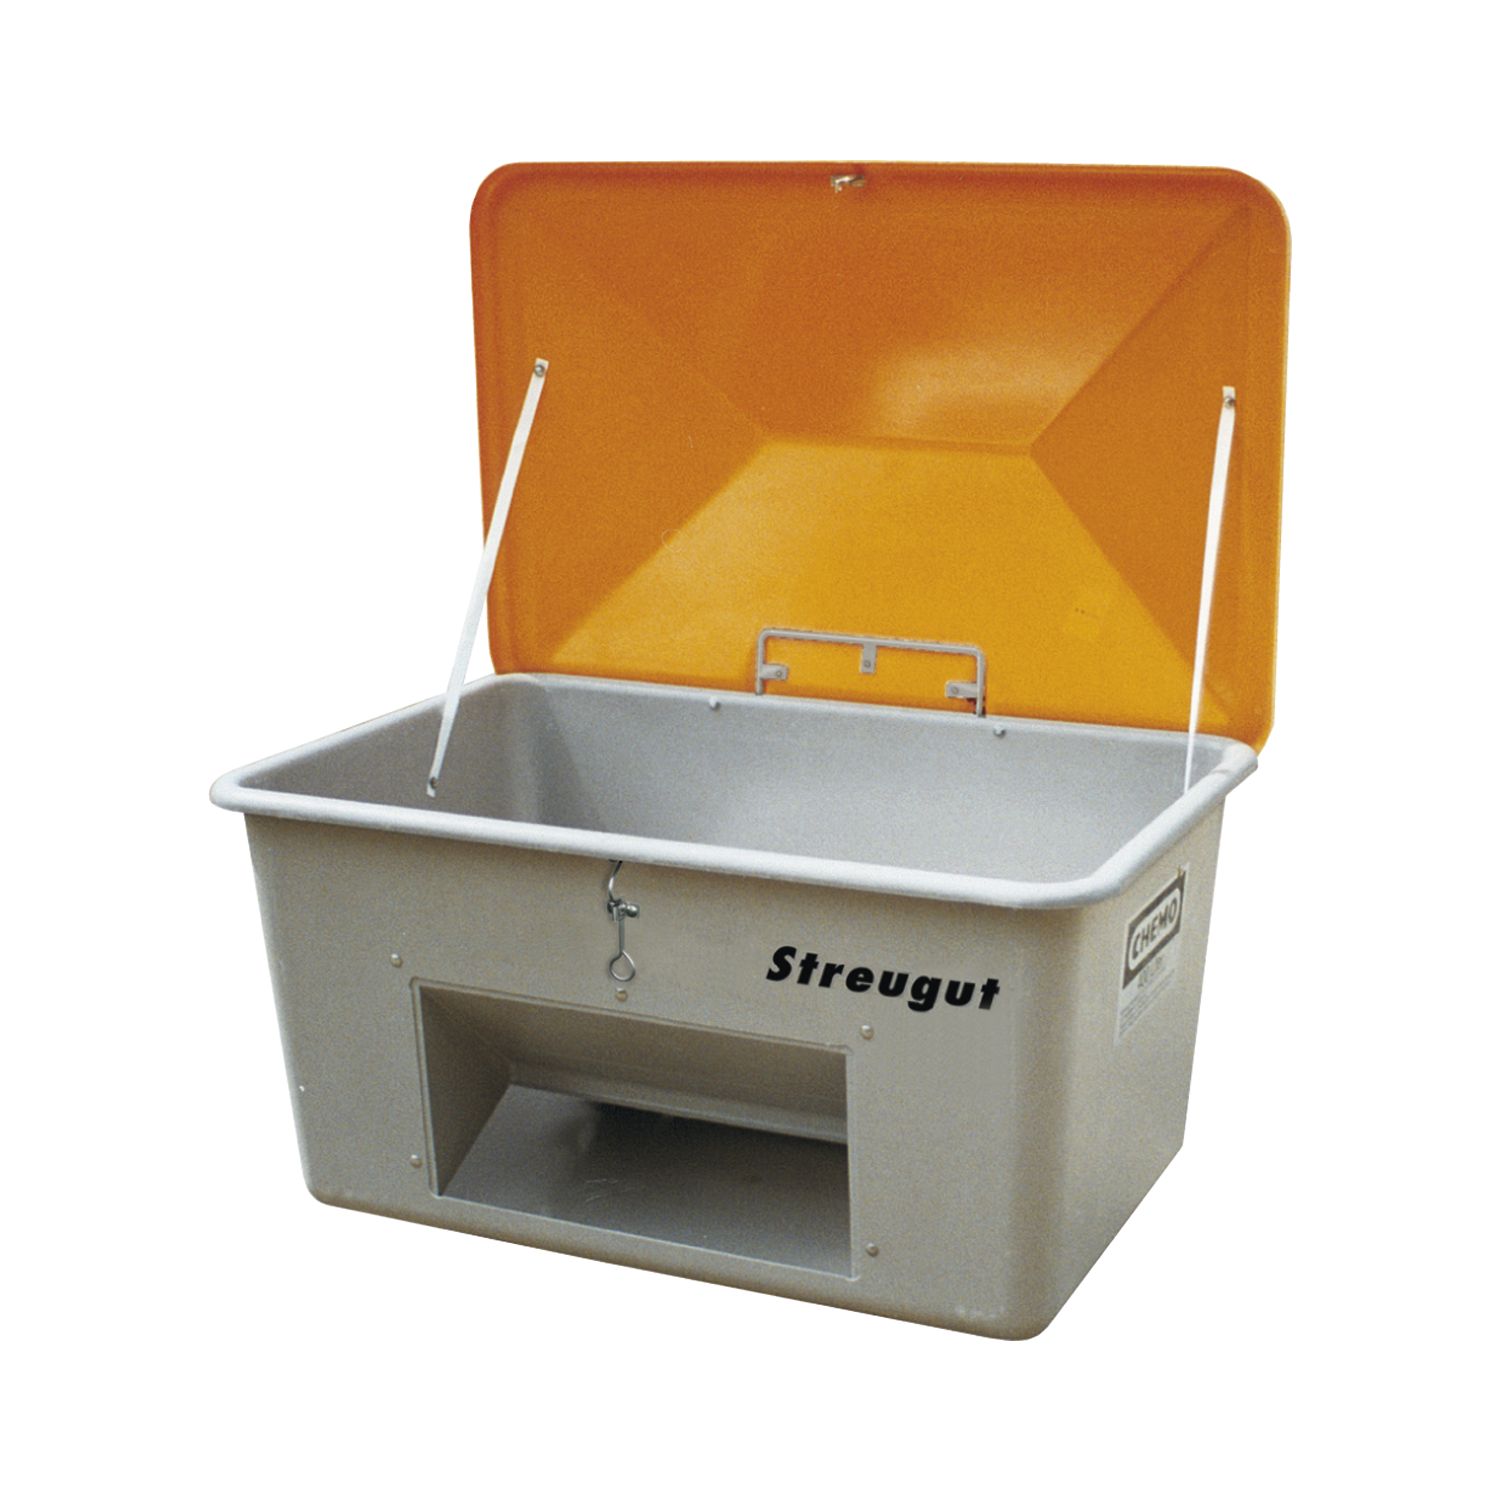 Cemo Streugutbehälter 1100 l ohne Entnahmeöffnung Deckel orange Behälter grau 